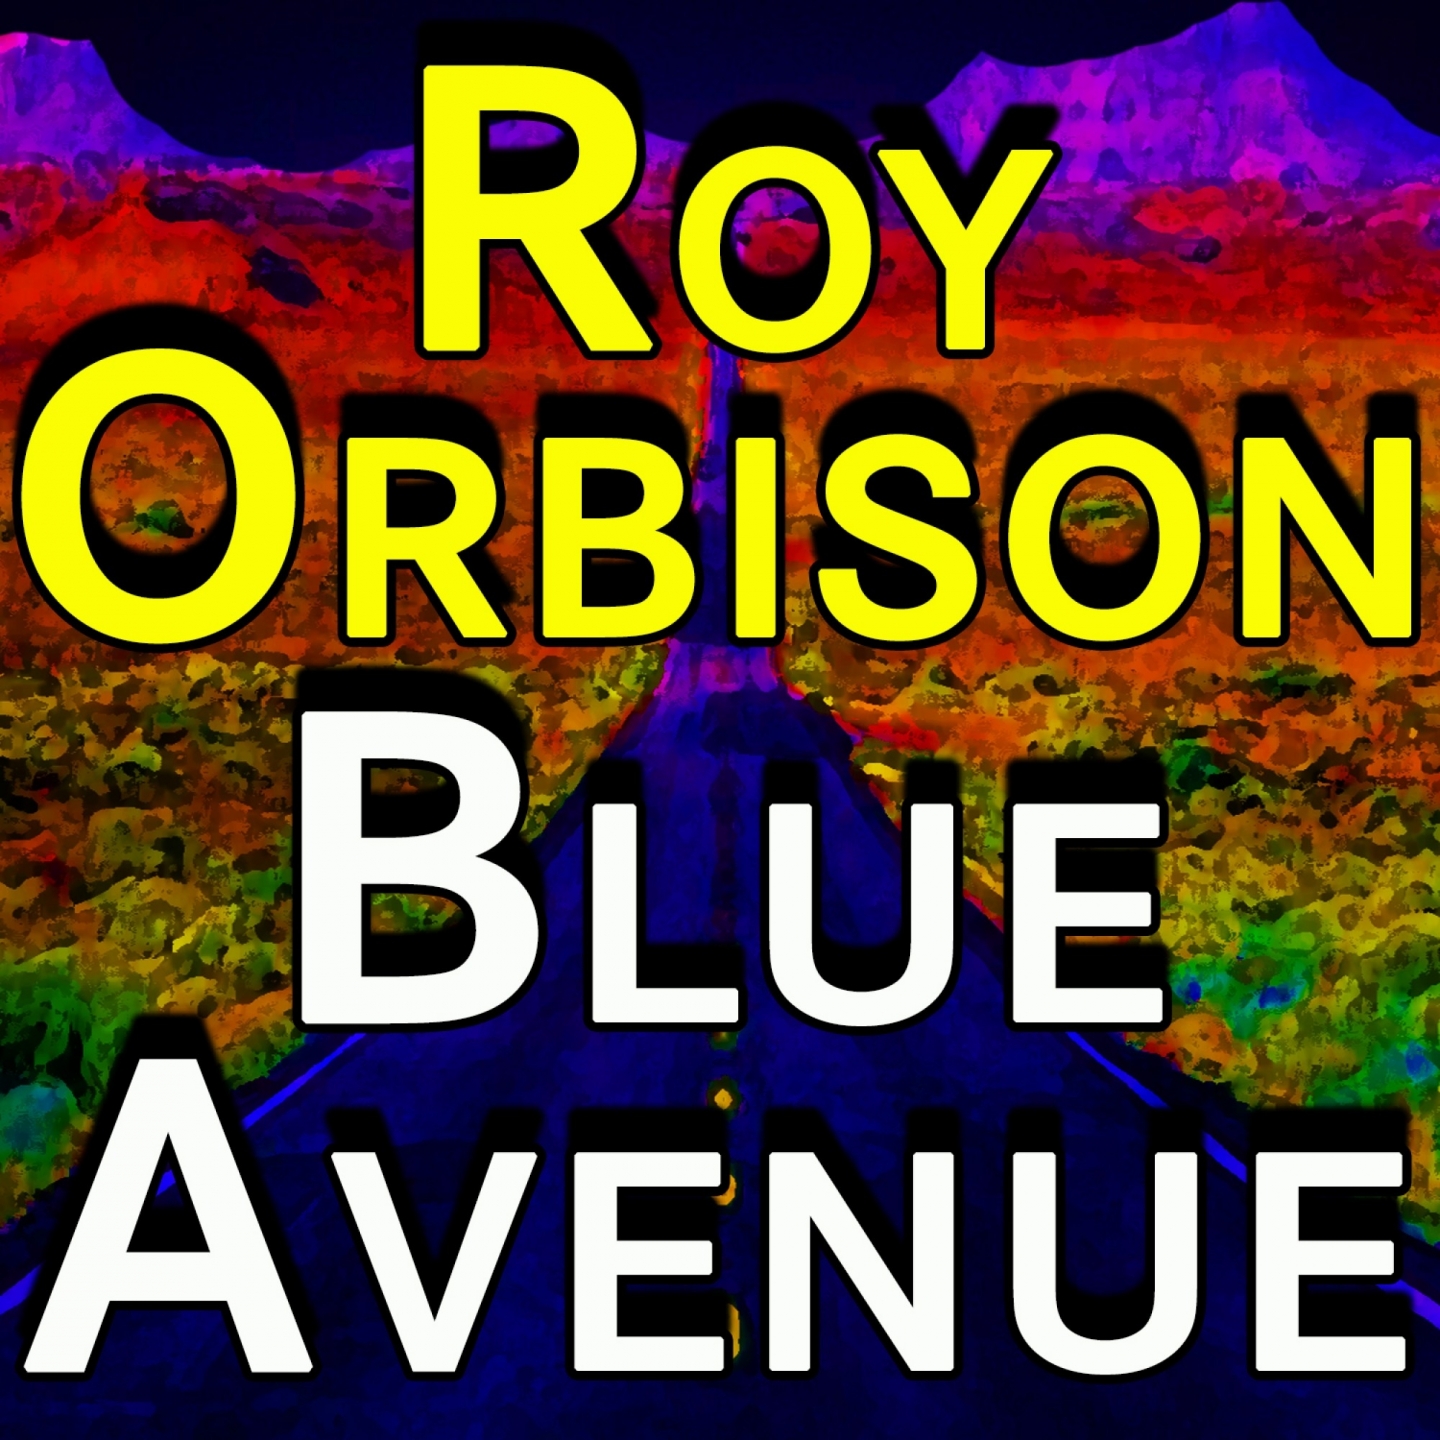 Roy Orbison Blue Avenue